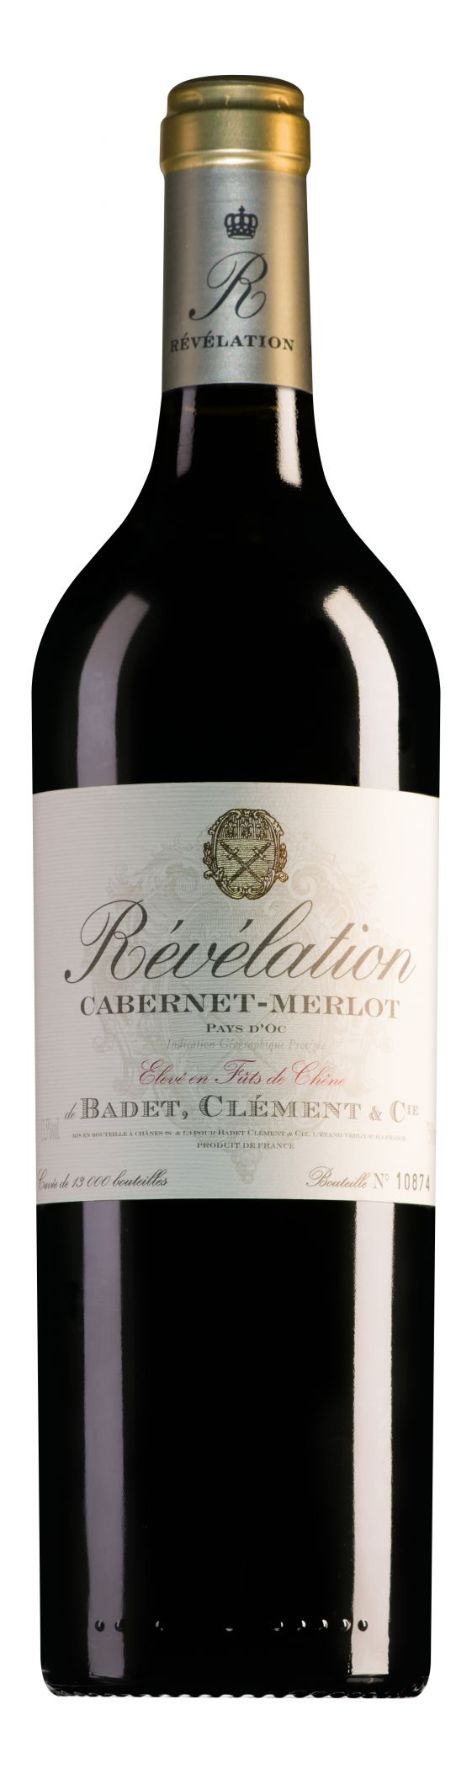 Revelation Cabernet-Merlot kopen?